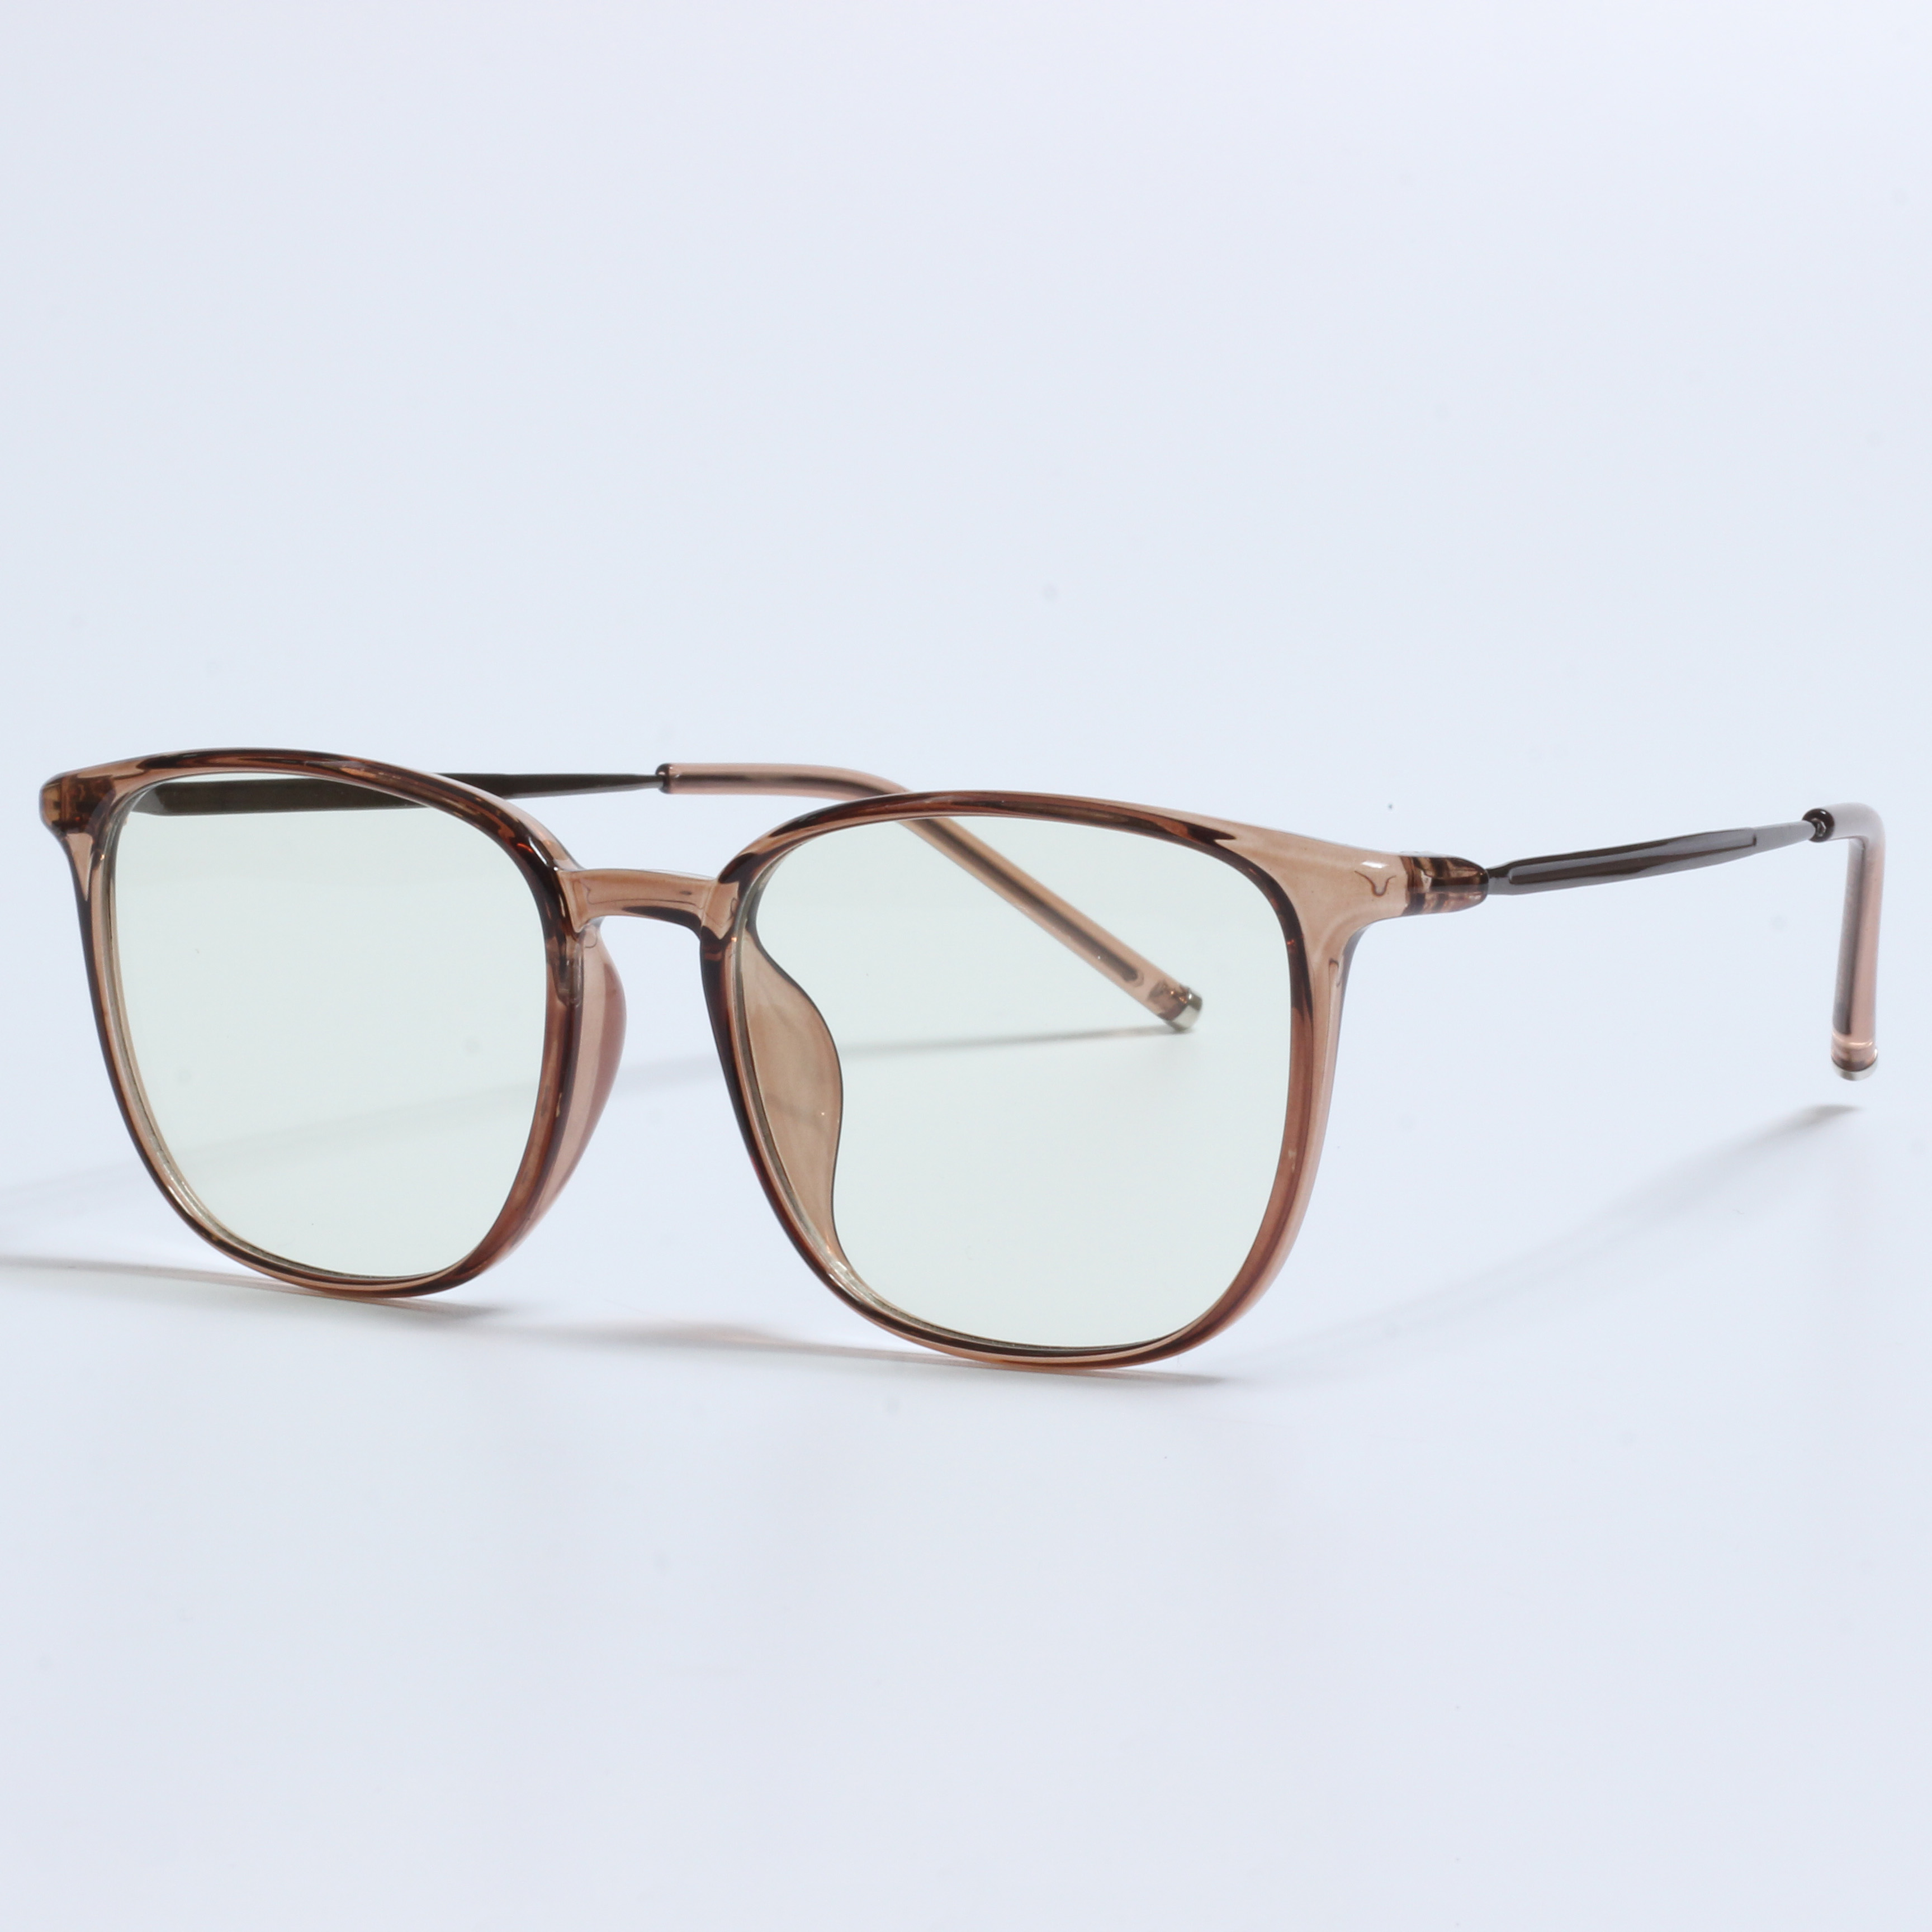 New retro lunette anti lumiere designer prescription glasses (7)